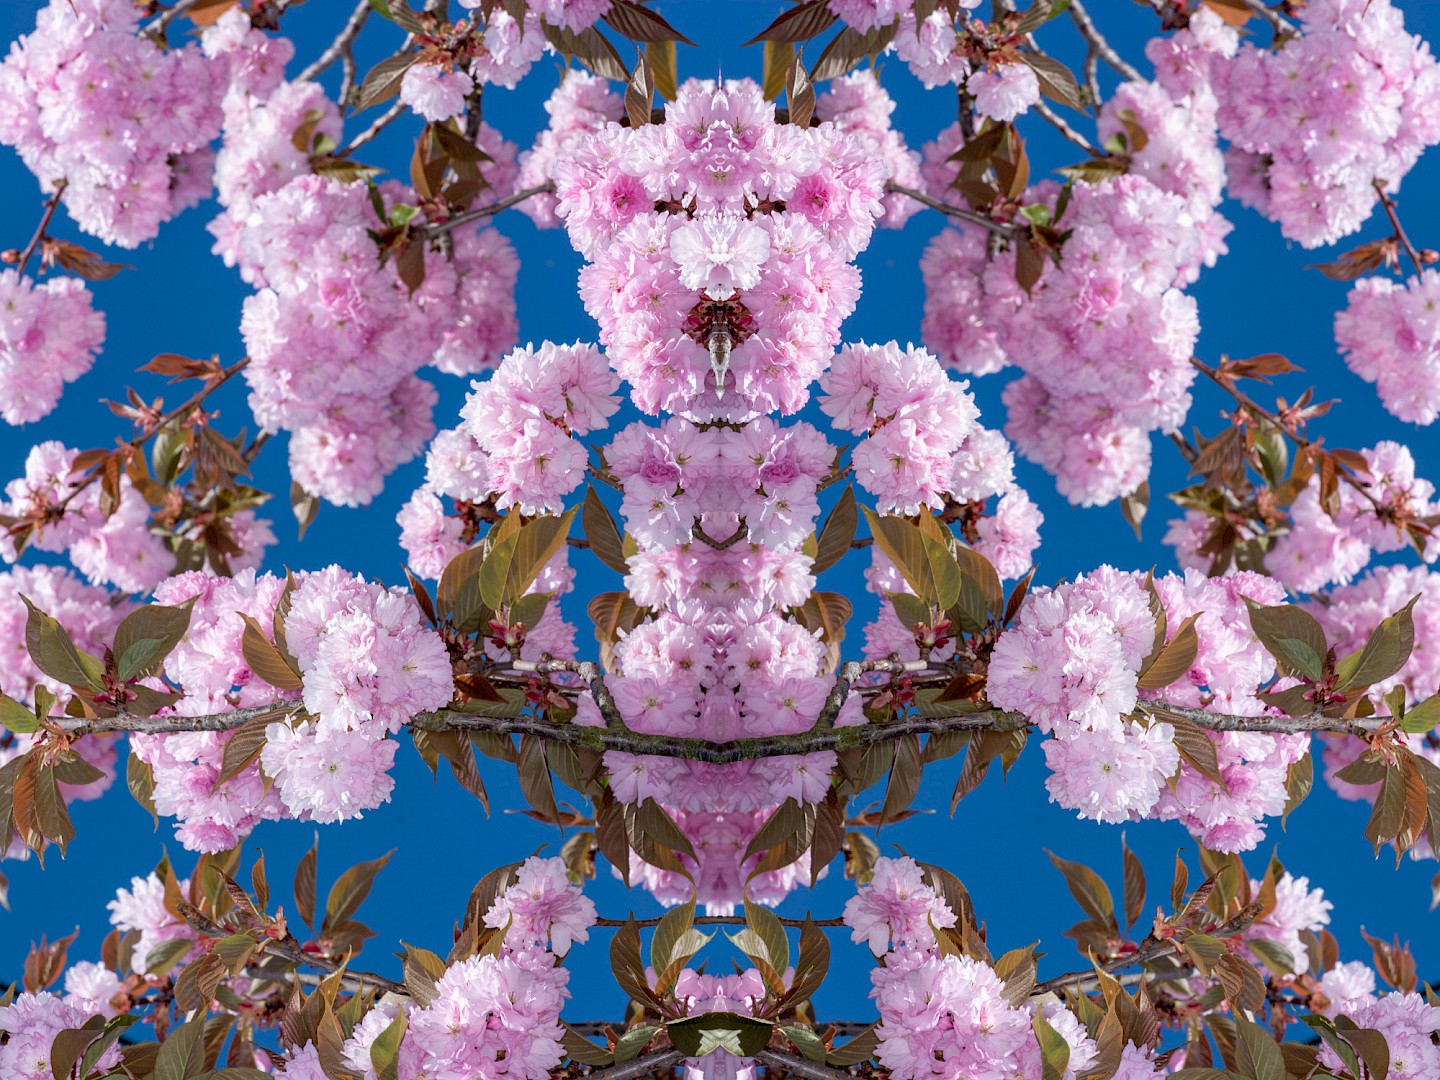 Symmetrical blossom